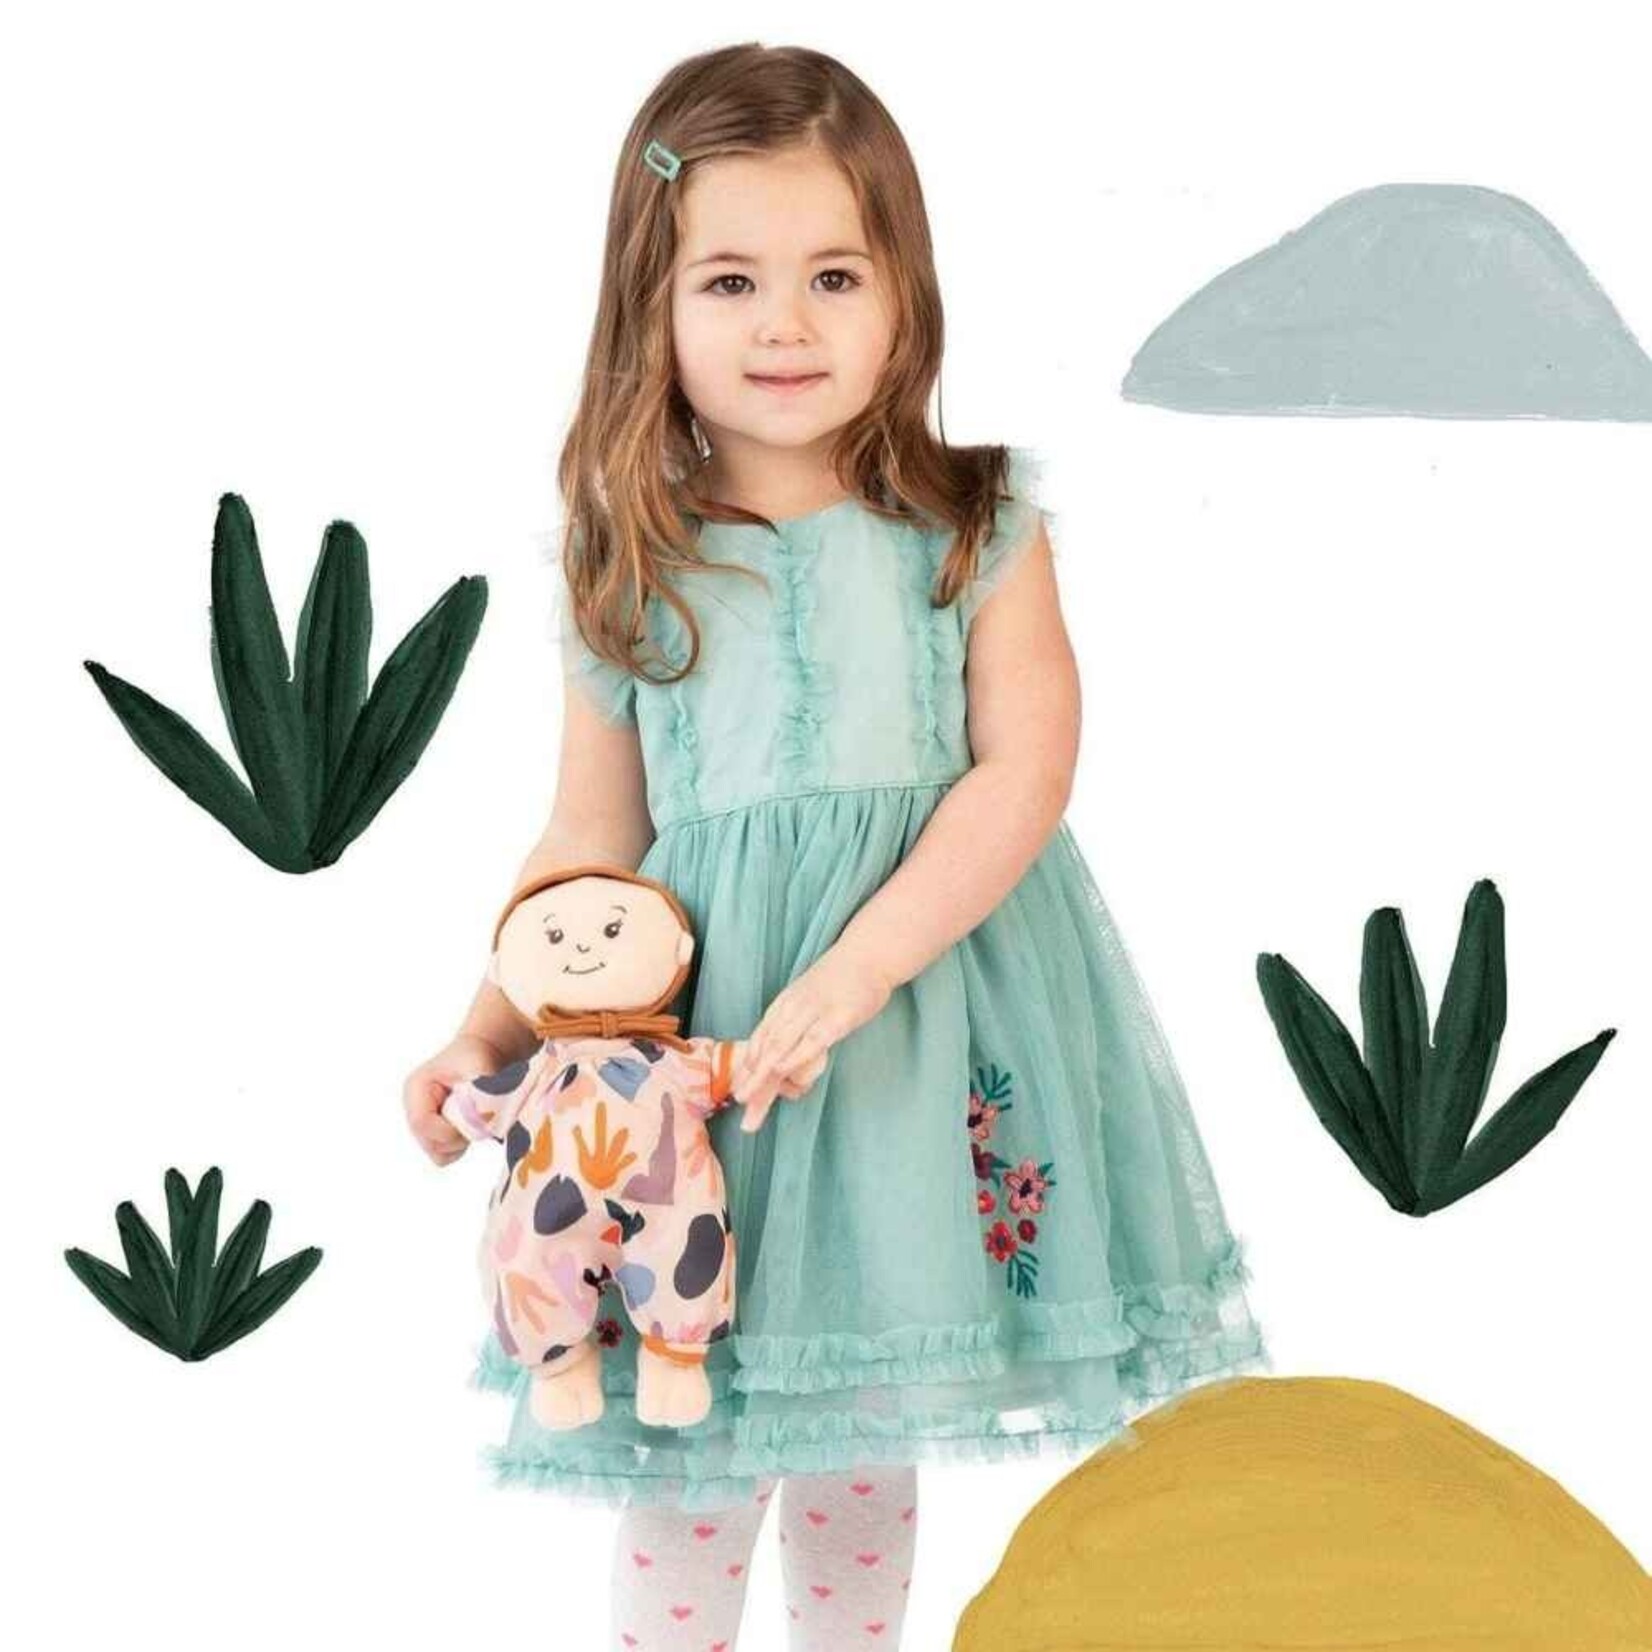 Manhattan Toy Wee Baby Stella- Botanical Garden Outfit